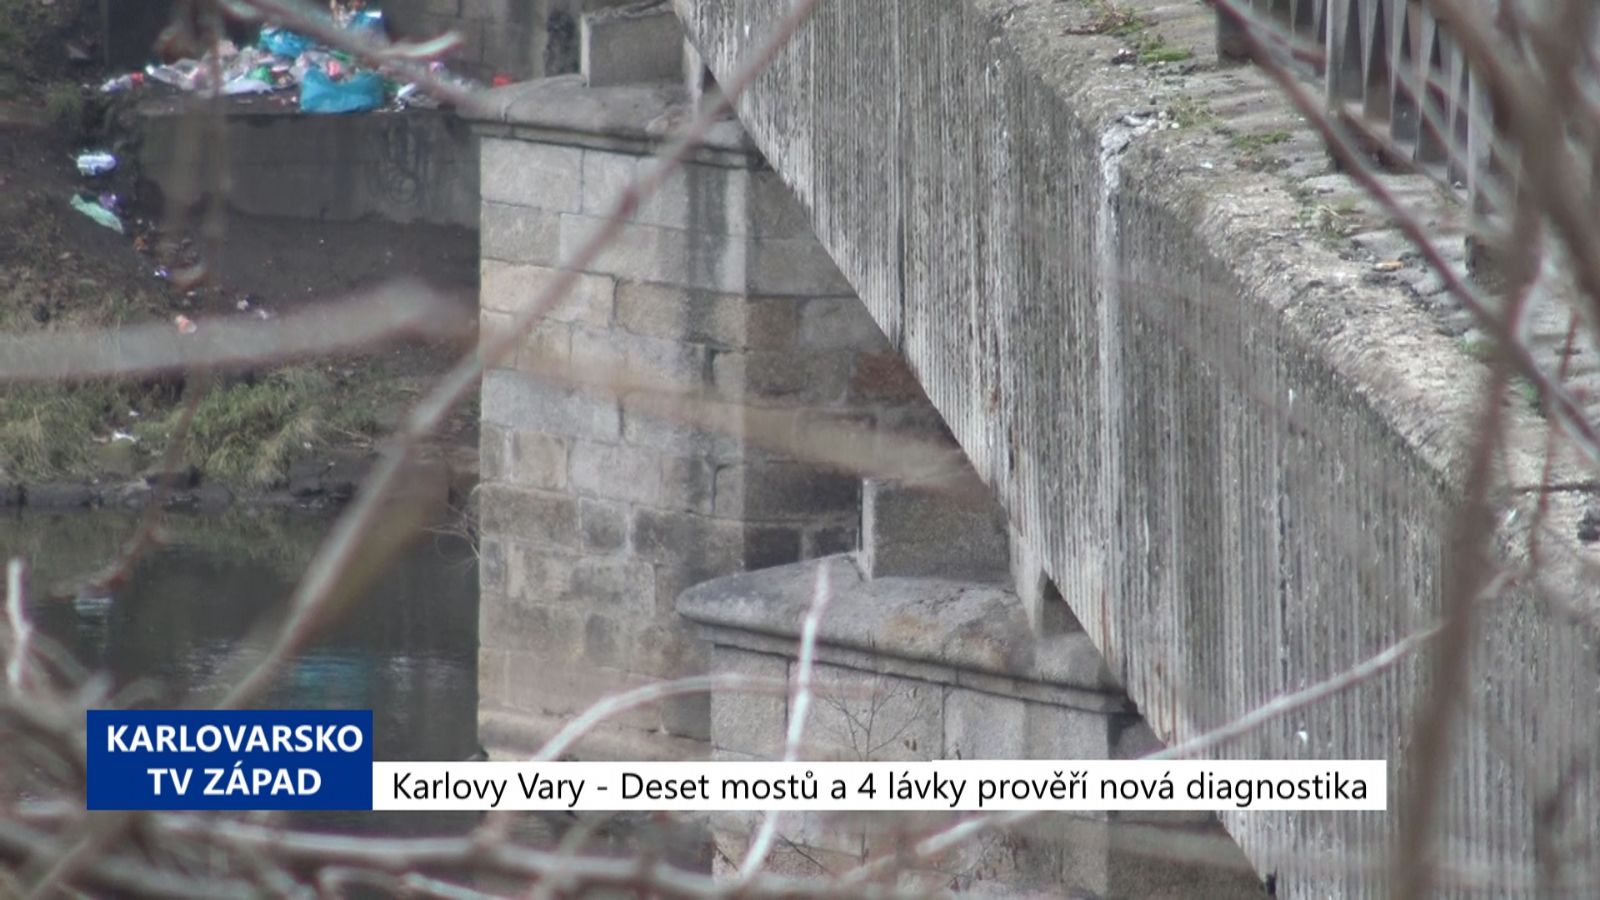 Karlovy Vary: Deset mostů a 4 lávky prověří podrobná diagnostika (TV Západ)